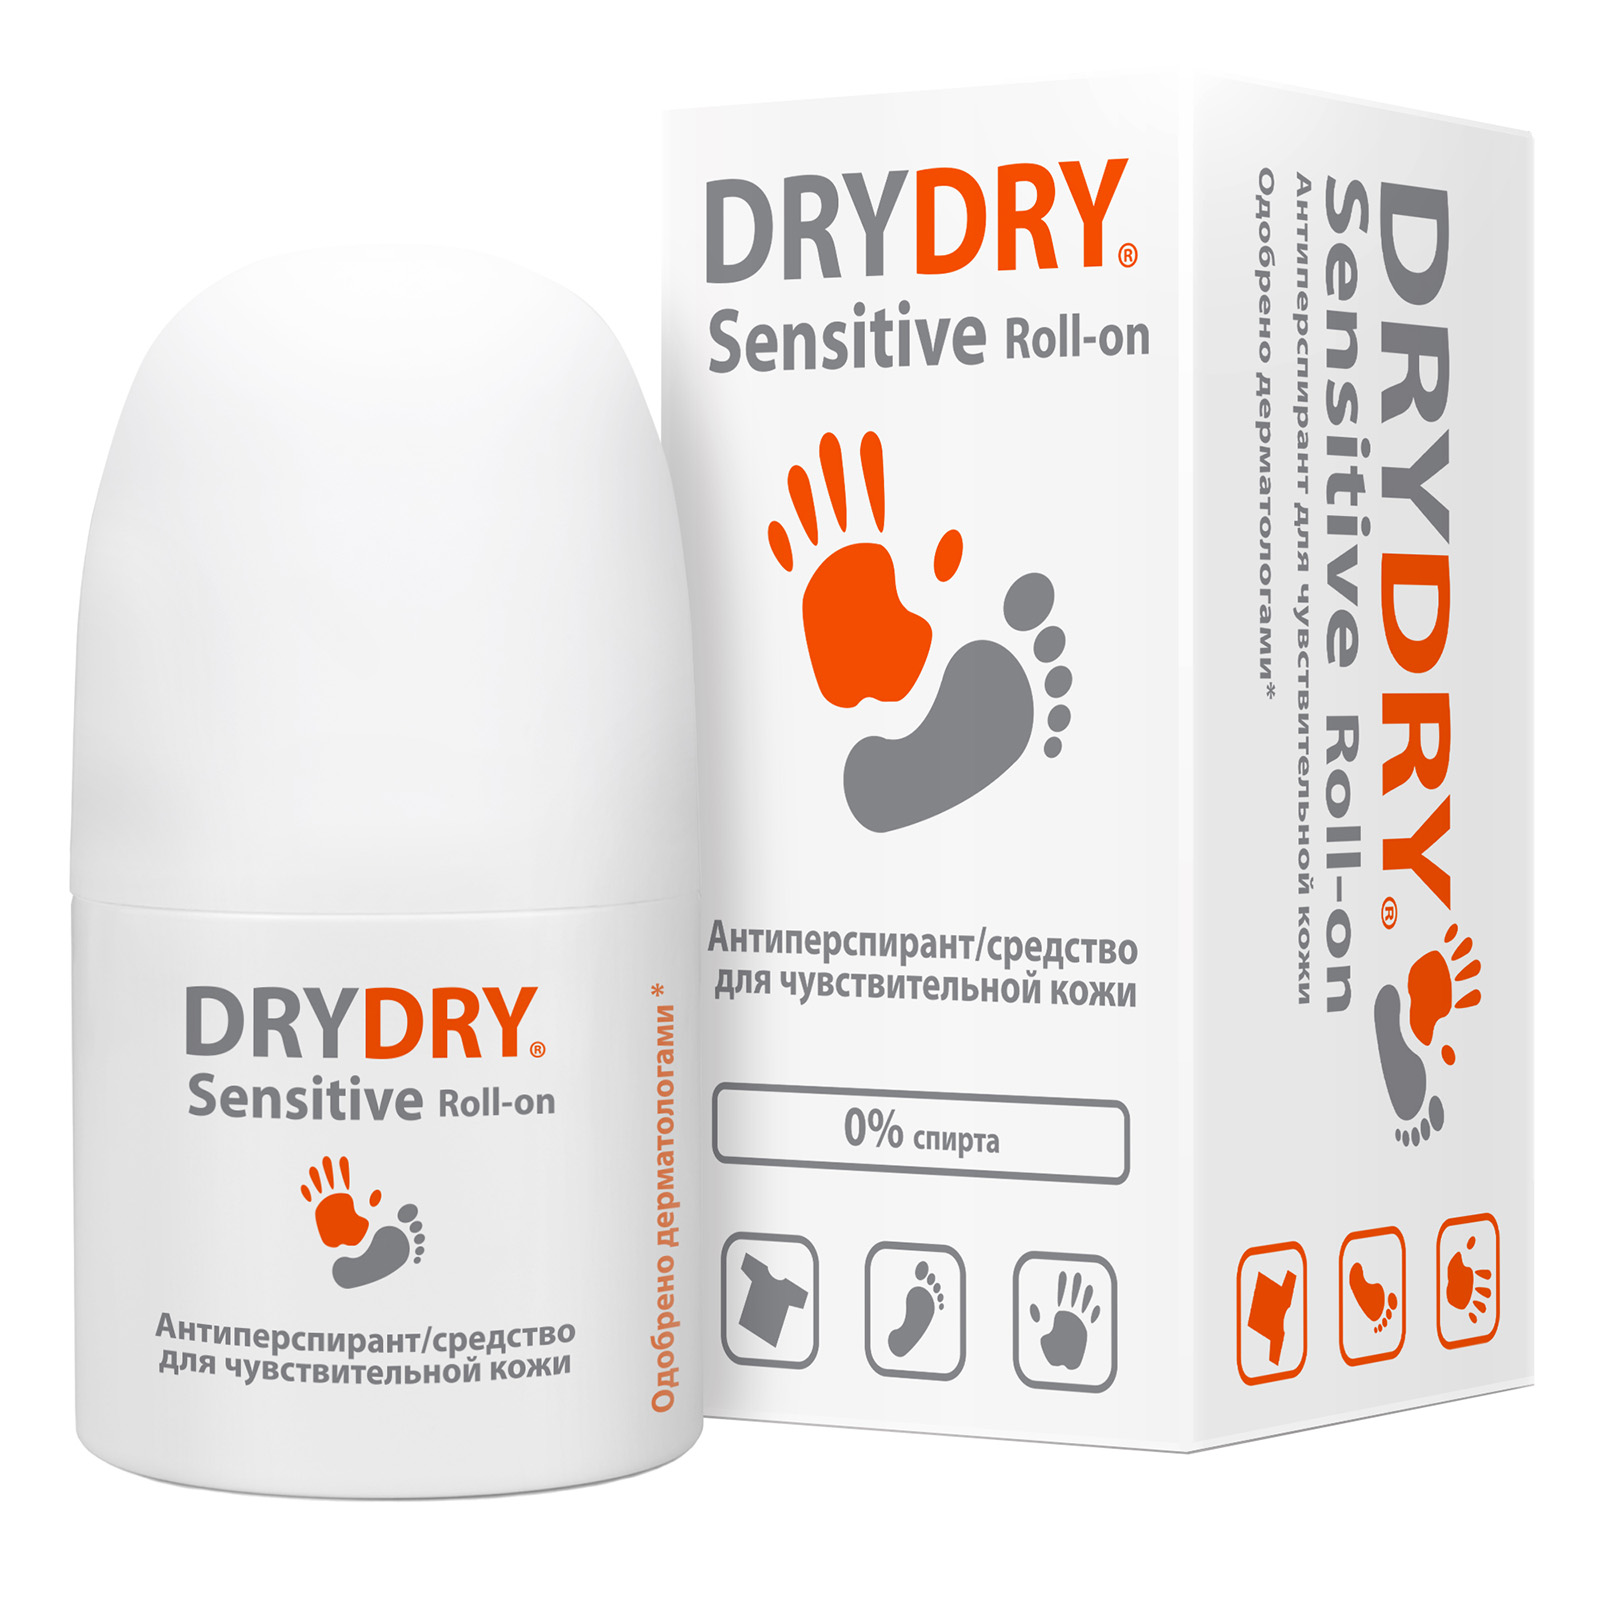 Dry Dry Средство от обильного потоотделения, 50 мл (Dry Dry, Sensitive) dry dry средство от обильного потоотделения 50 мл dry dry light